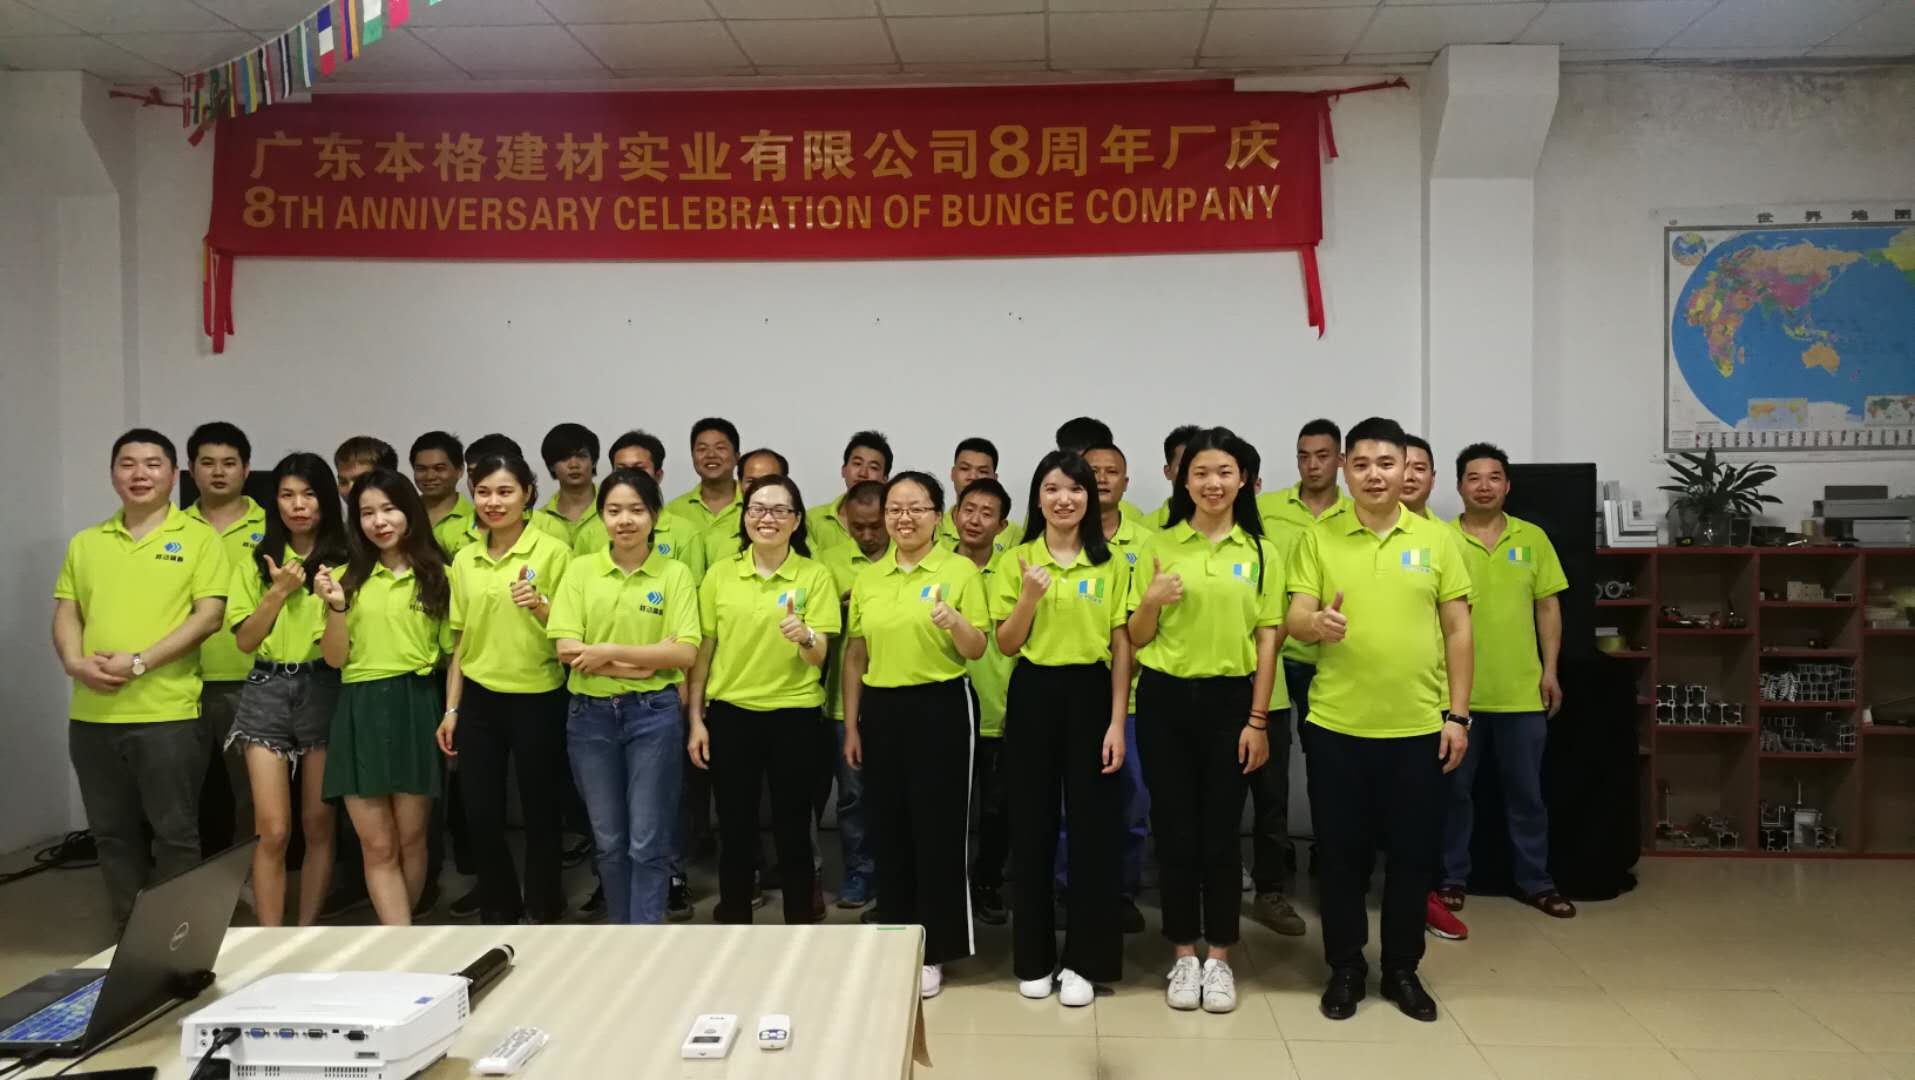 ประเทศจีน Guangdong Bunge Building Material Industrial Co., Ltd รายละเอียด บริษัท